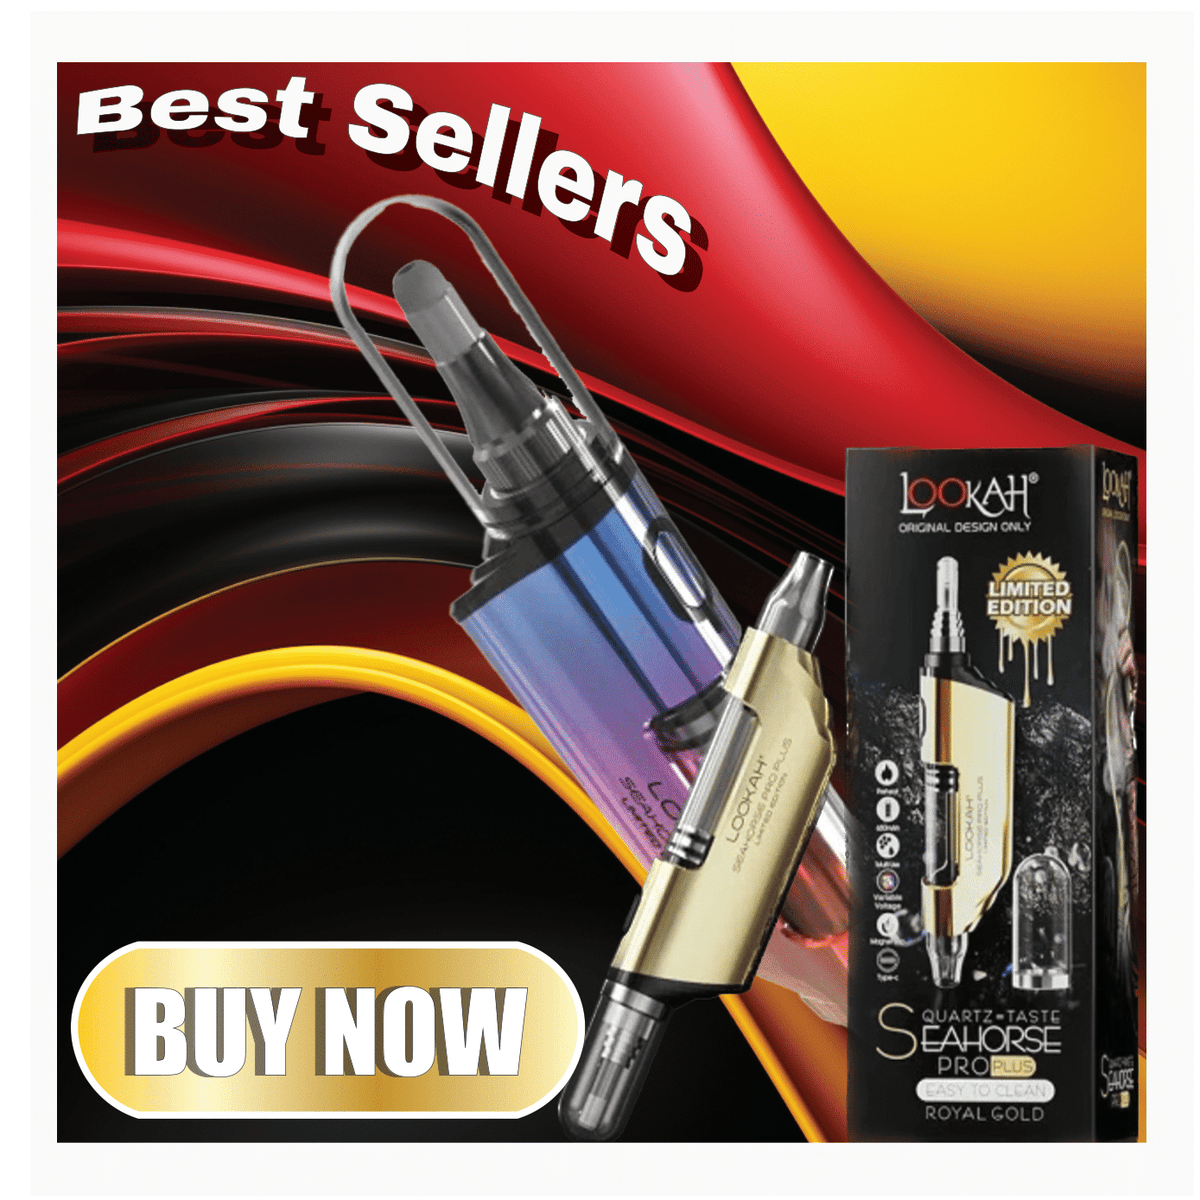 Lookah Seahorse Max Starter Kit - Lighter USA